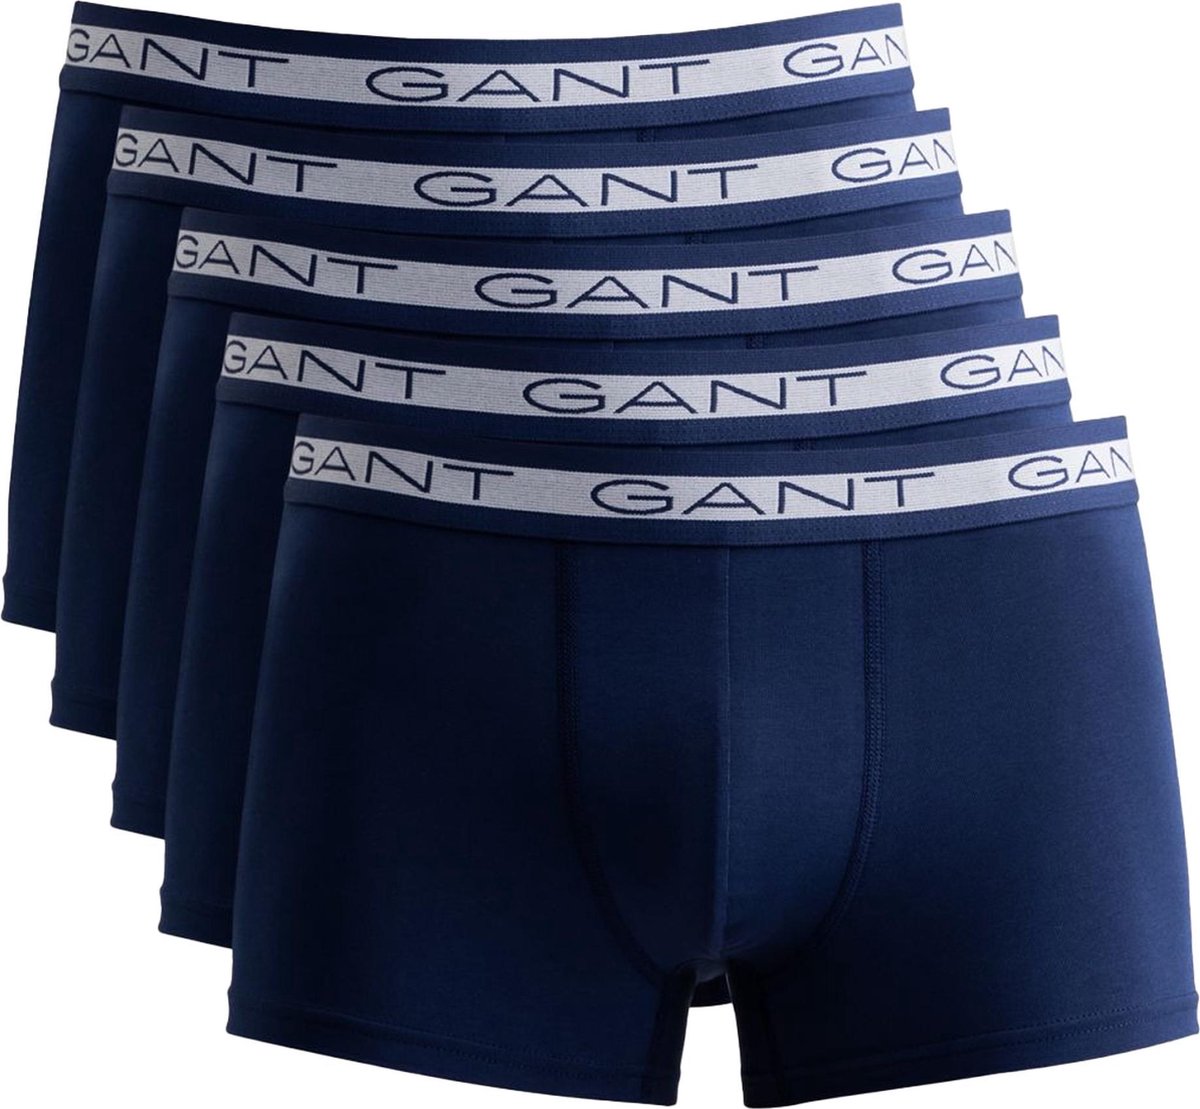 Gant Onderbroek Mannen - Maat XXL | bol.com